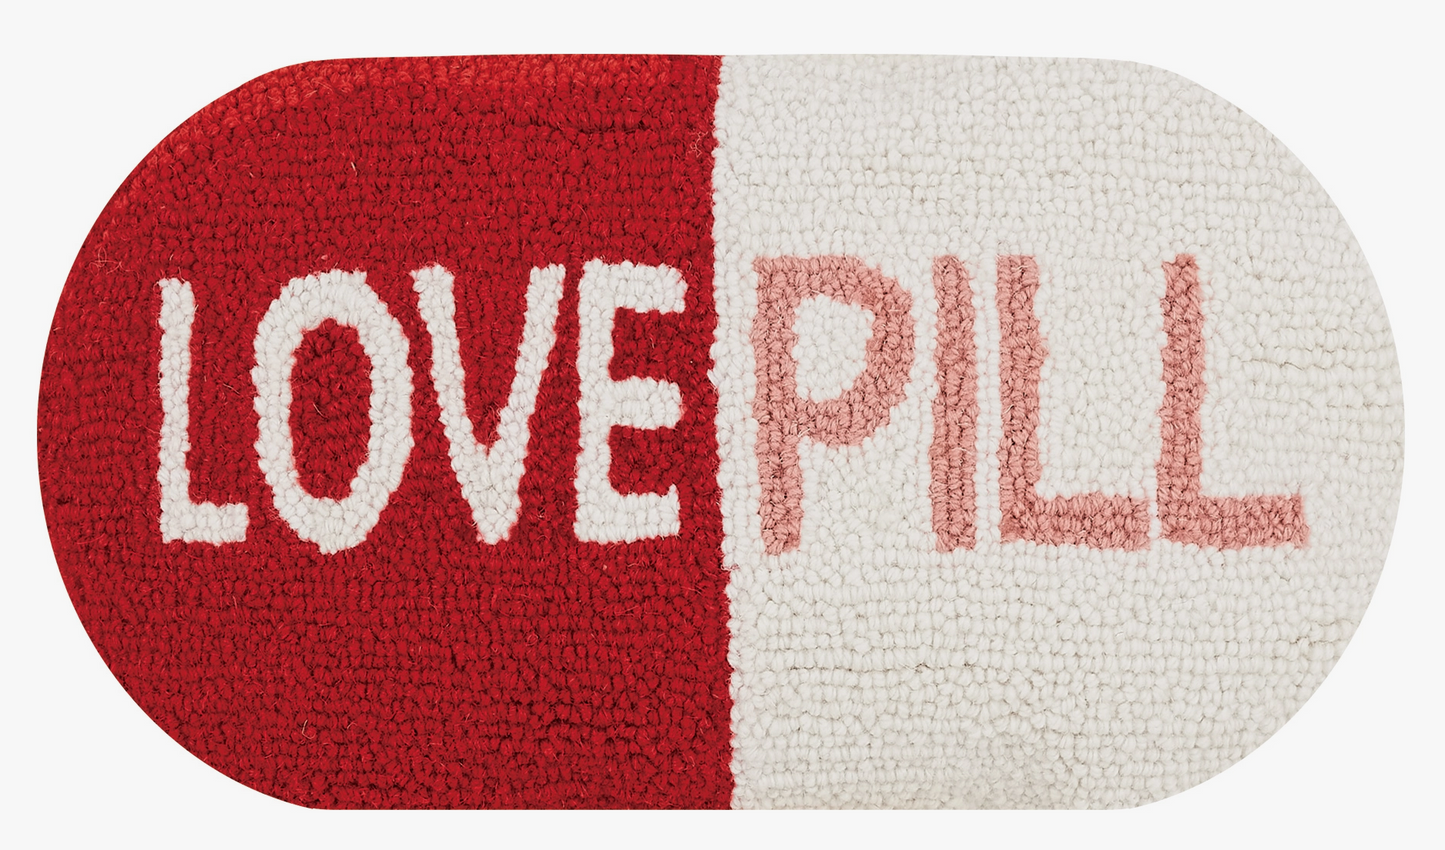 Love Pill Hook Pillow